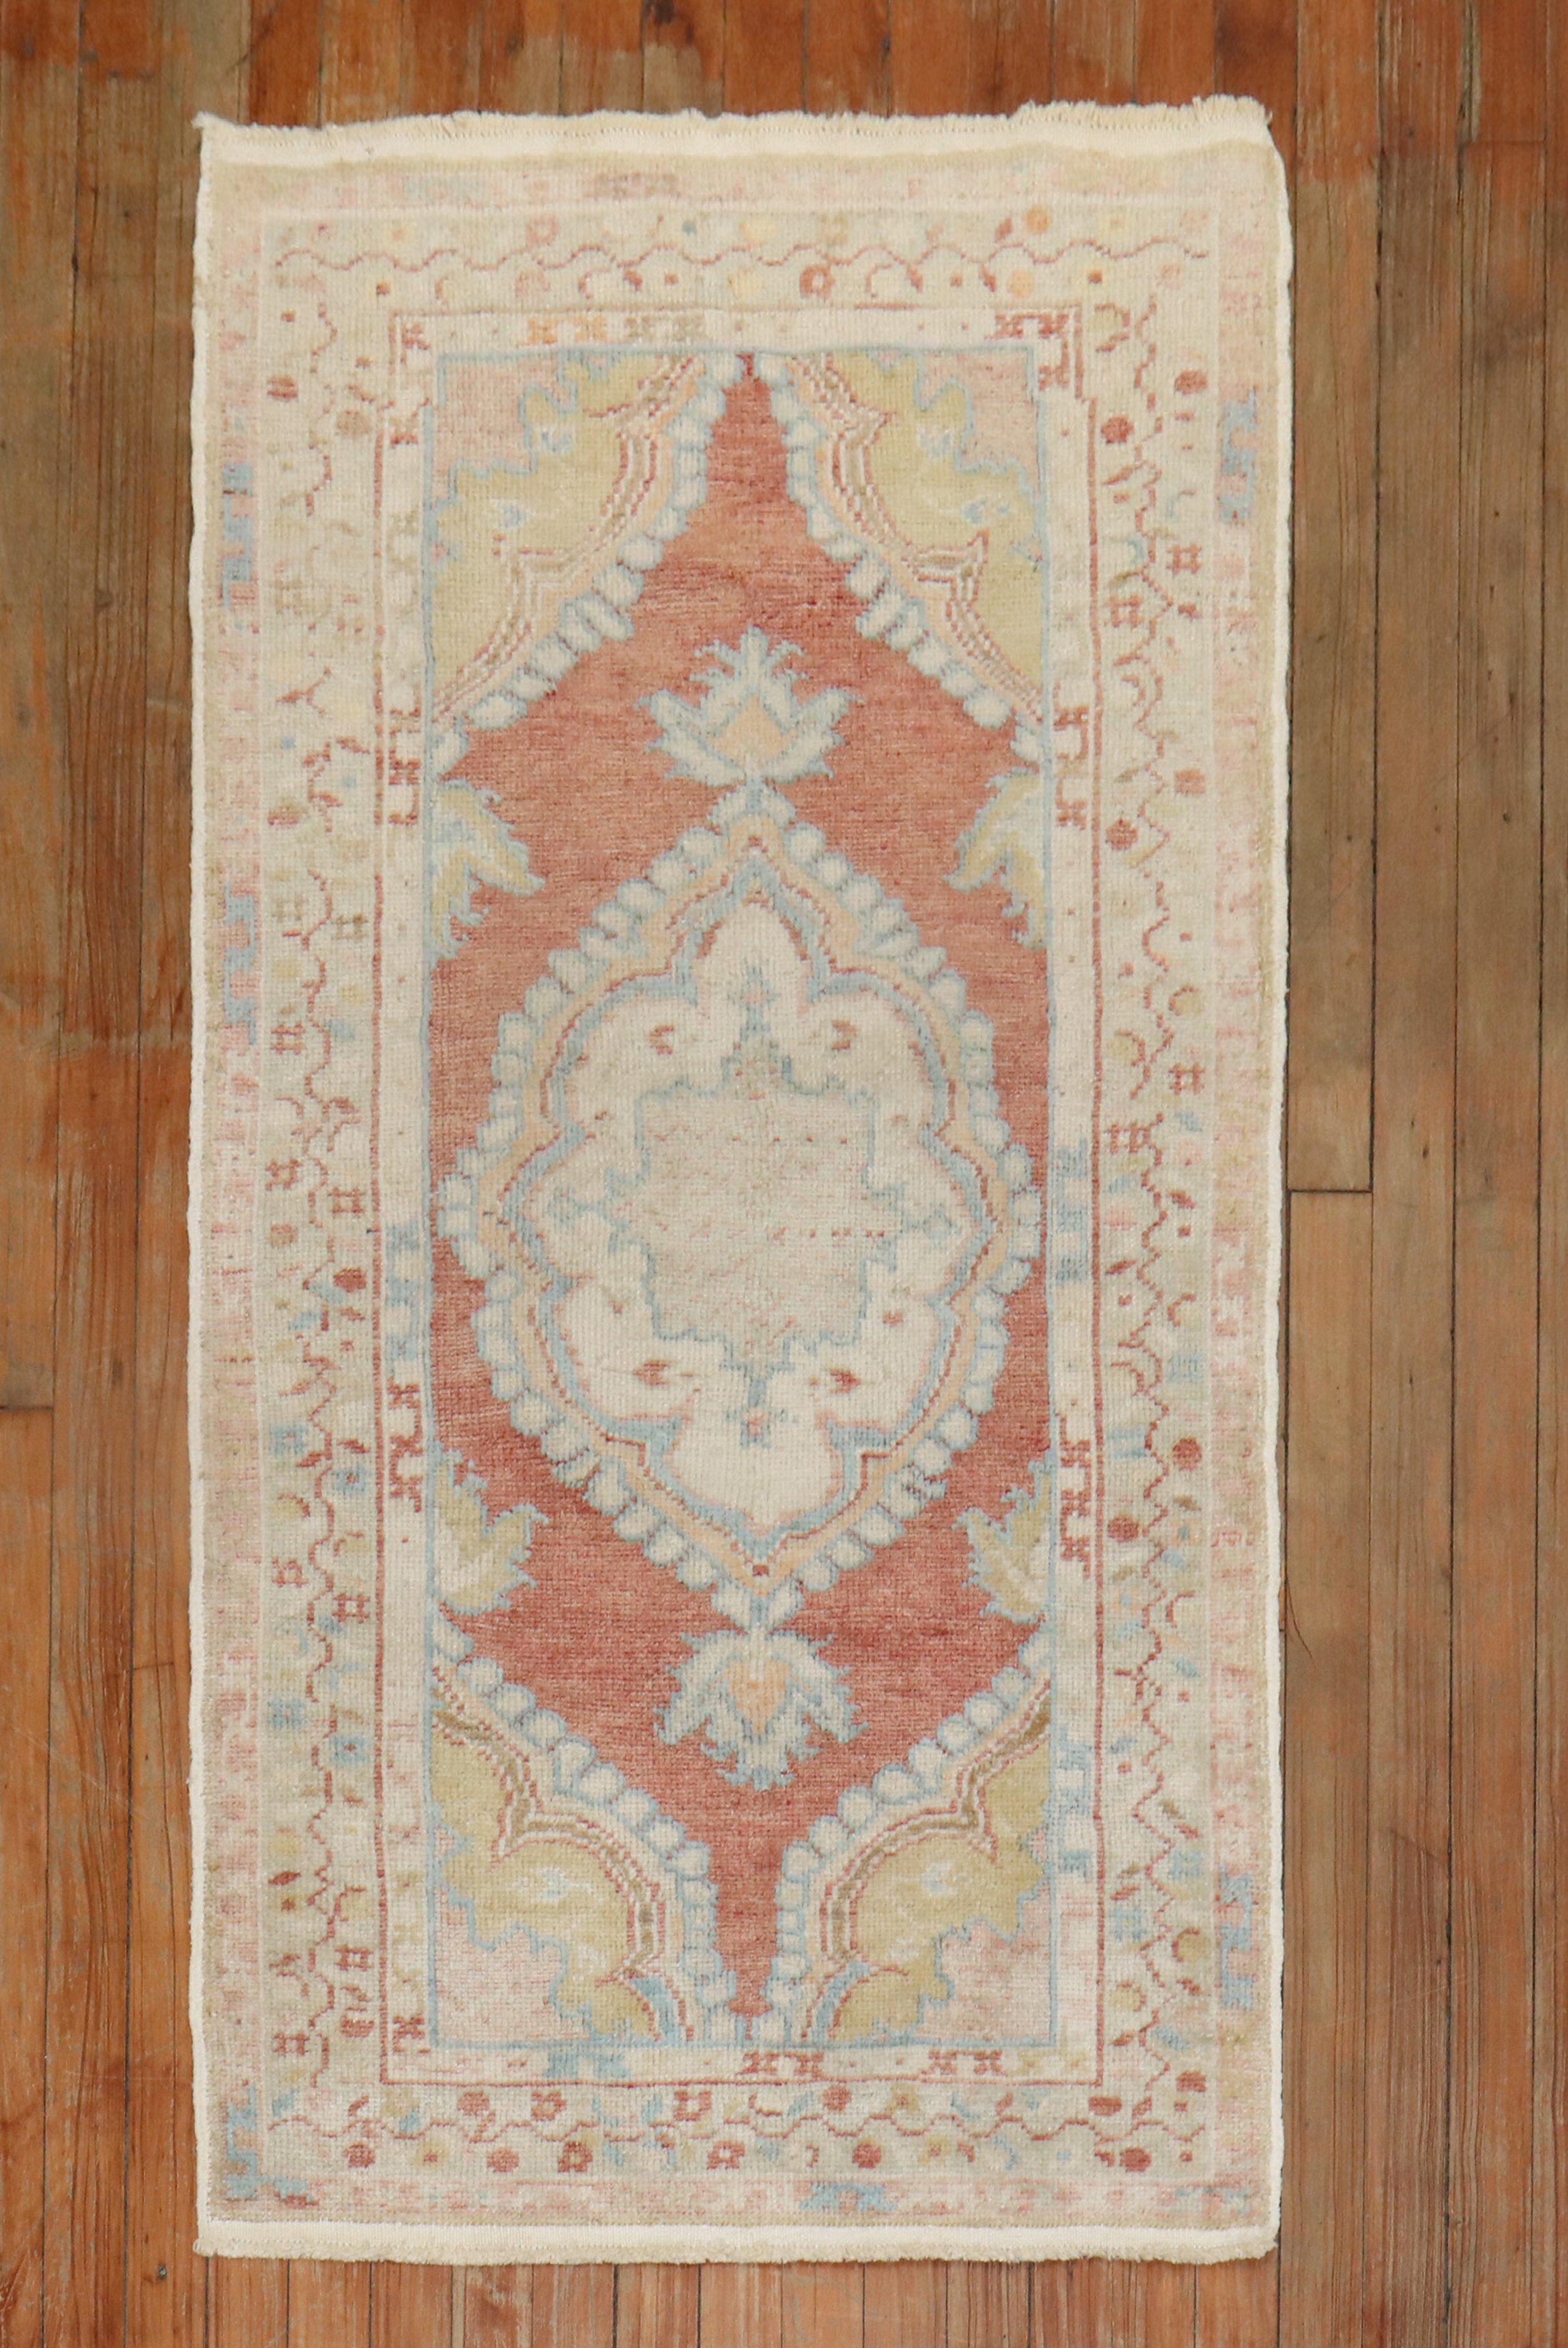 Authentischer Oushak-Teppich in Streugröße aus dem frühen 20. 

Maße: 2'6'' x 5'
